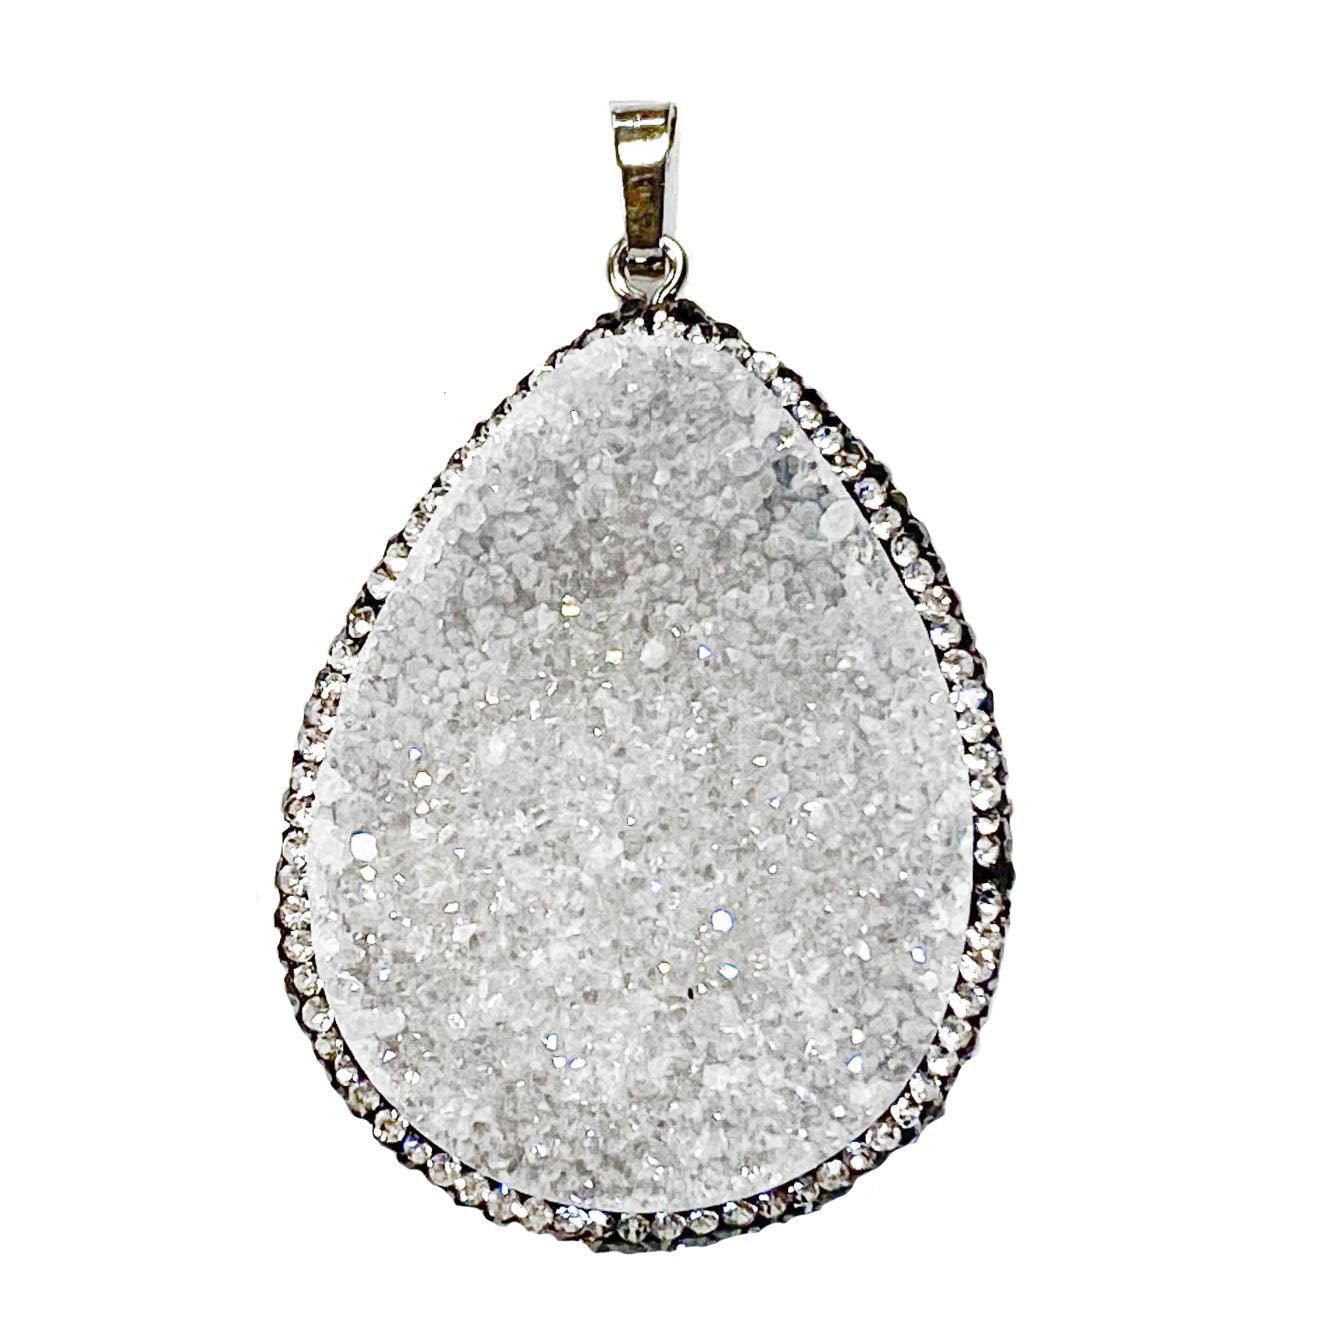 35-40mm free form druzy agate gemstone pendant - Clear